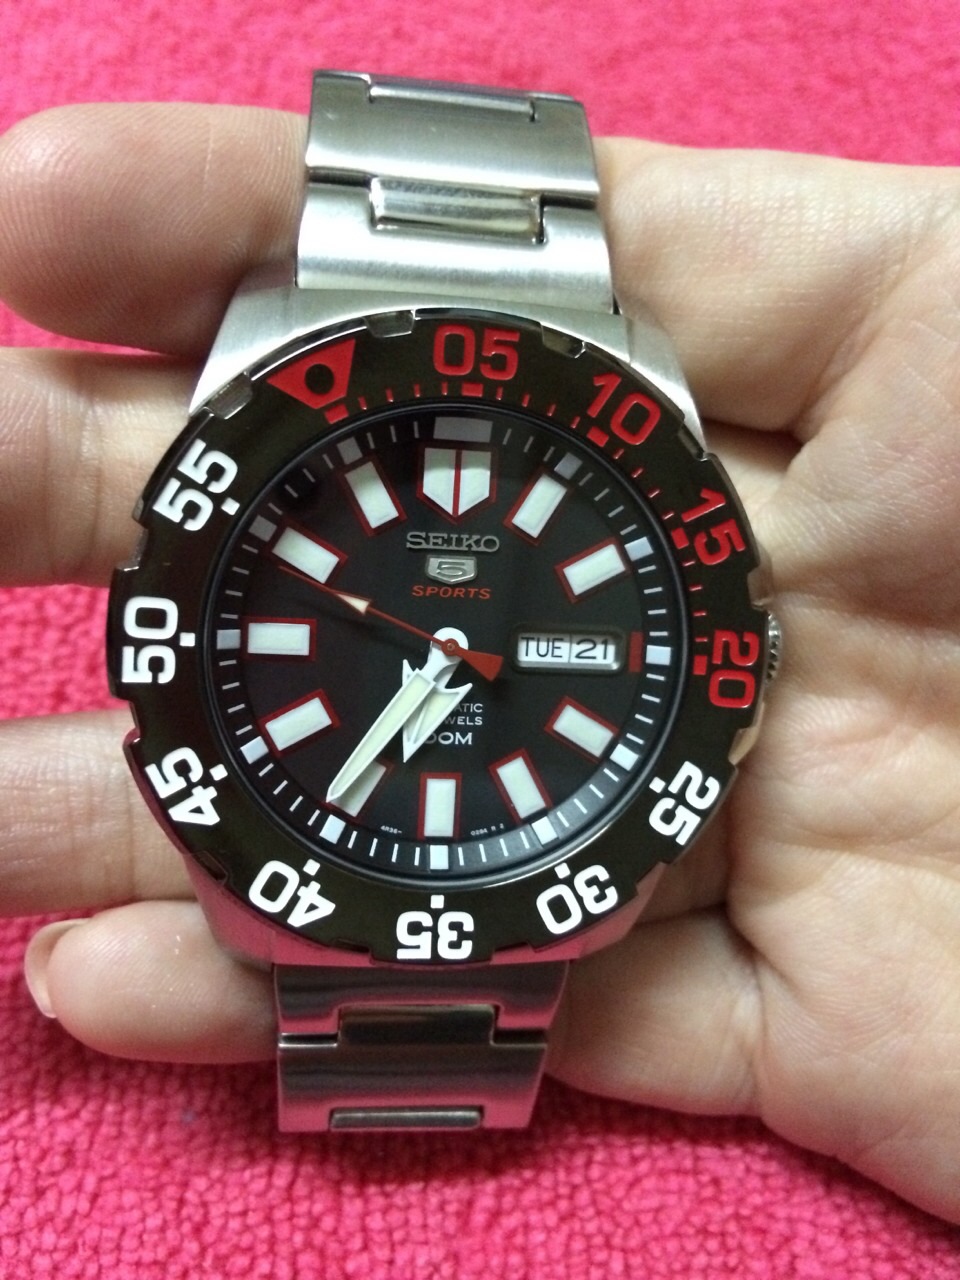 Đồng hồ Seiko 5 Sports Monster SRP487K1 phù hợp với người đam mê thể thao